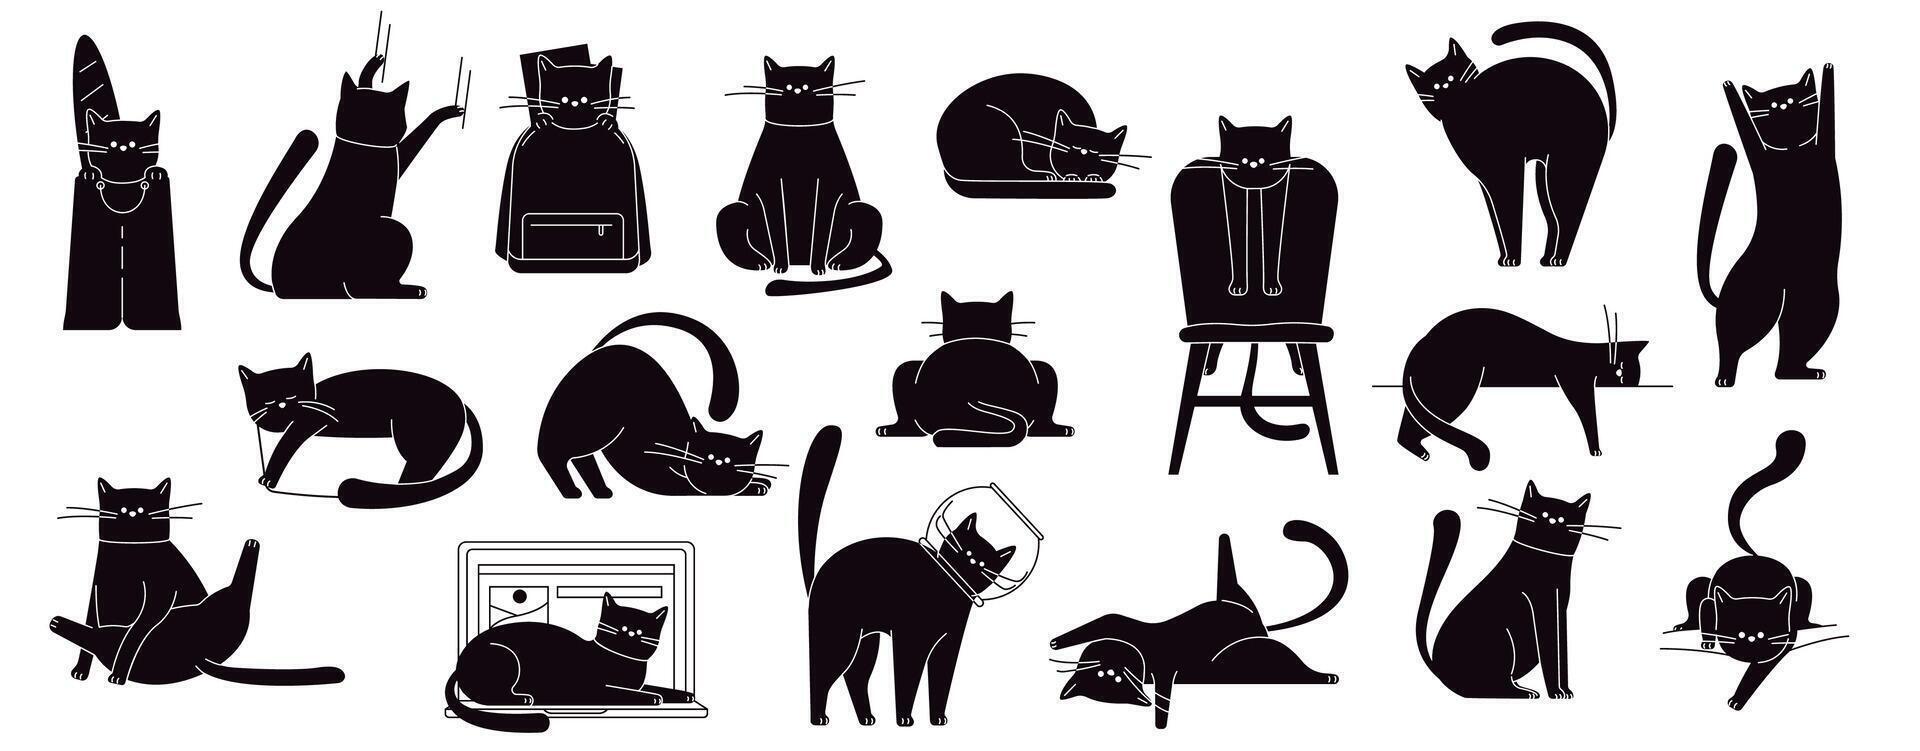 schwarz Katze Posen. süß Kitty Sitzung und gehen, komisch flauschige inländisch Katzen im anders posiert und Positionen. Vektor Karikatur Katzen isoliert einstellen